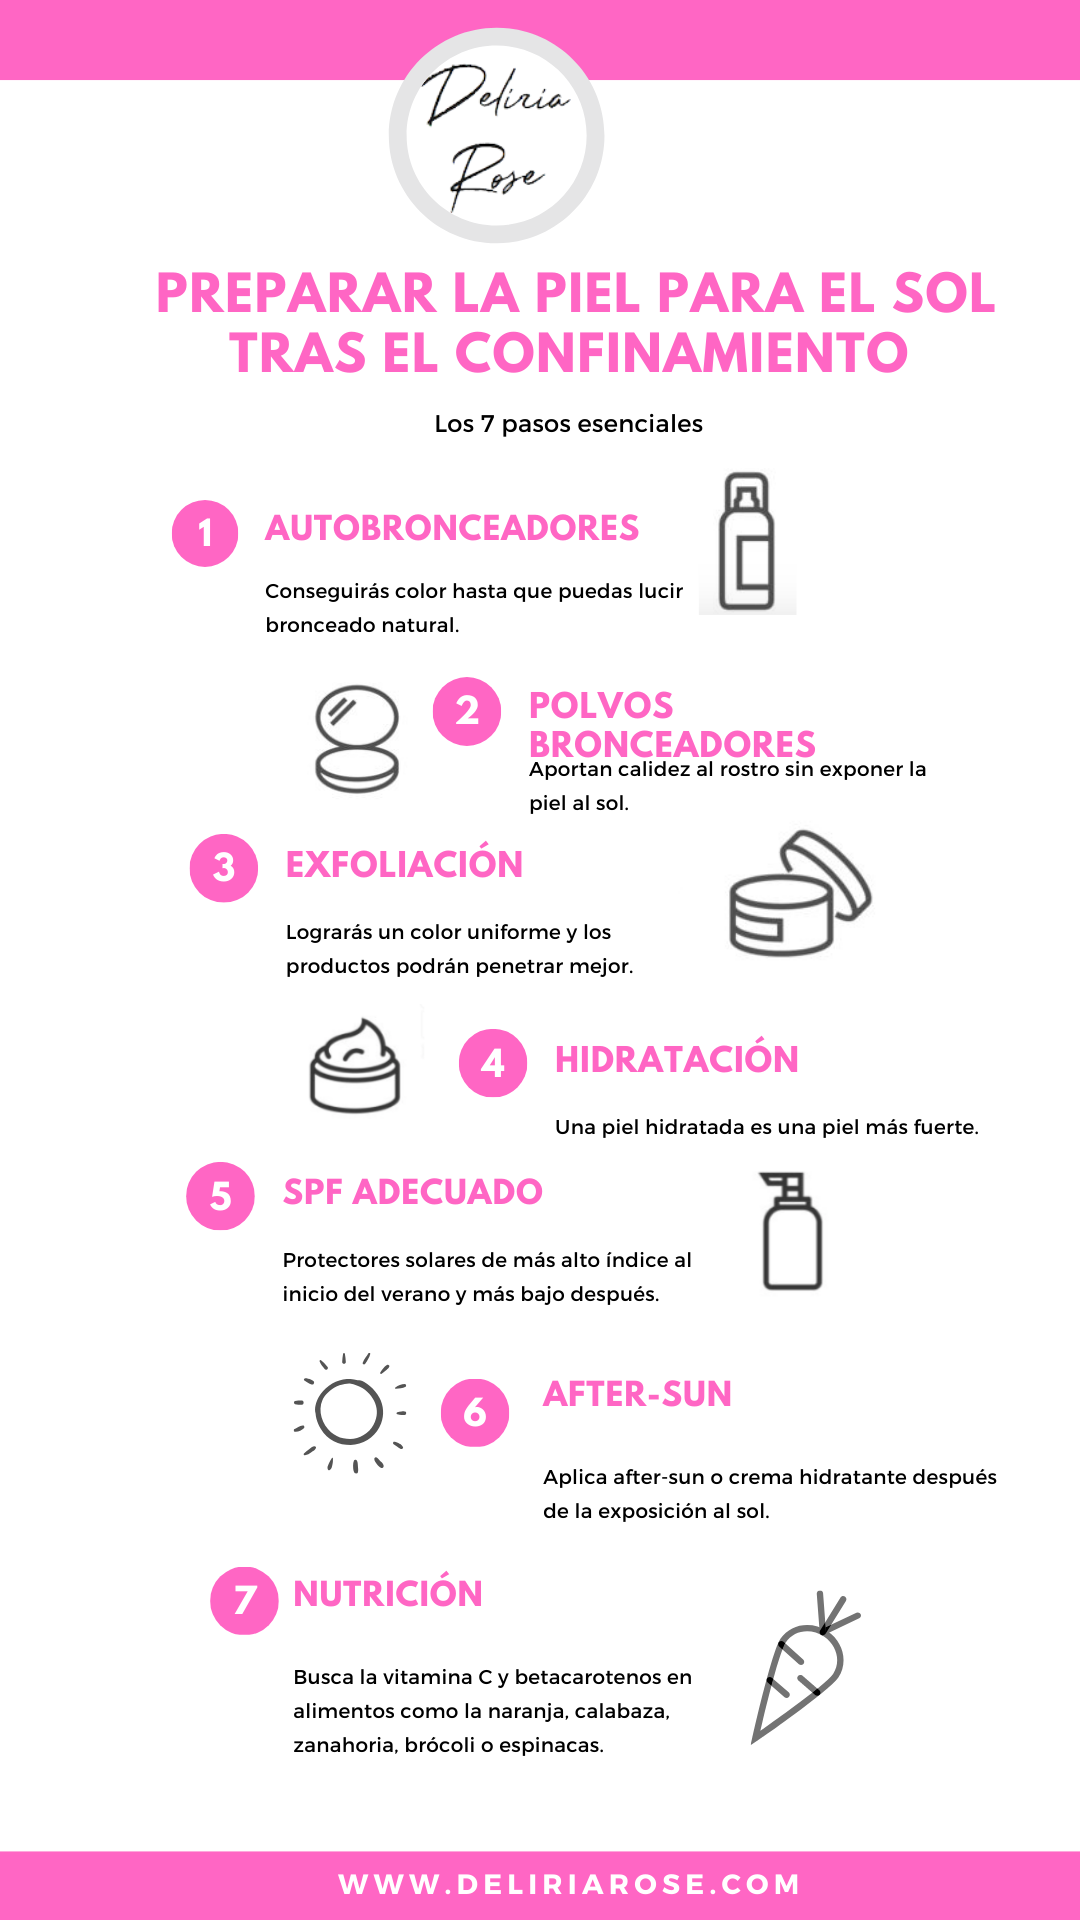 7 consejos para preparar la piel para el sol tras el confinamiento